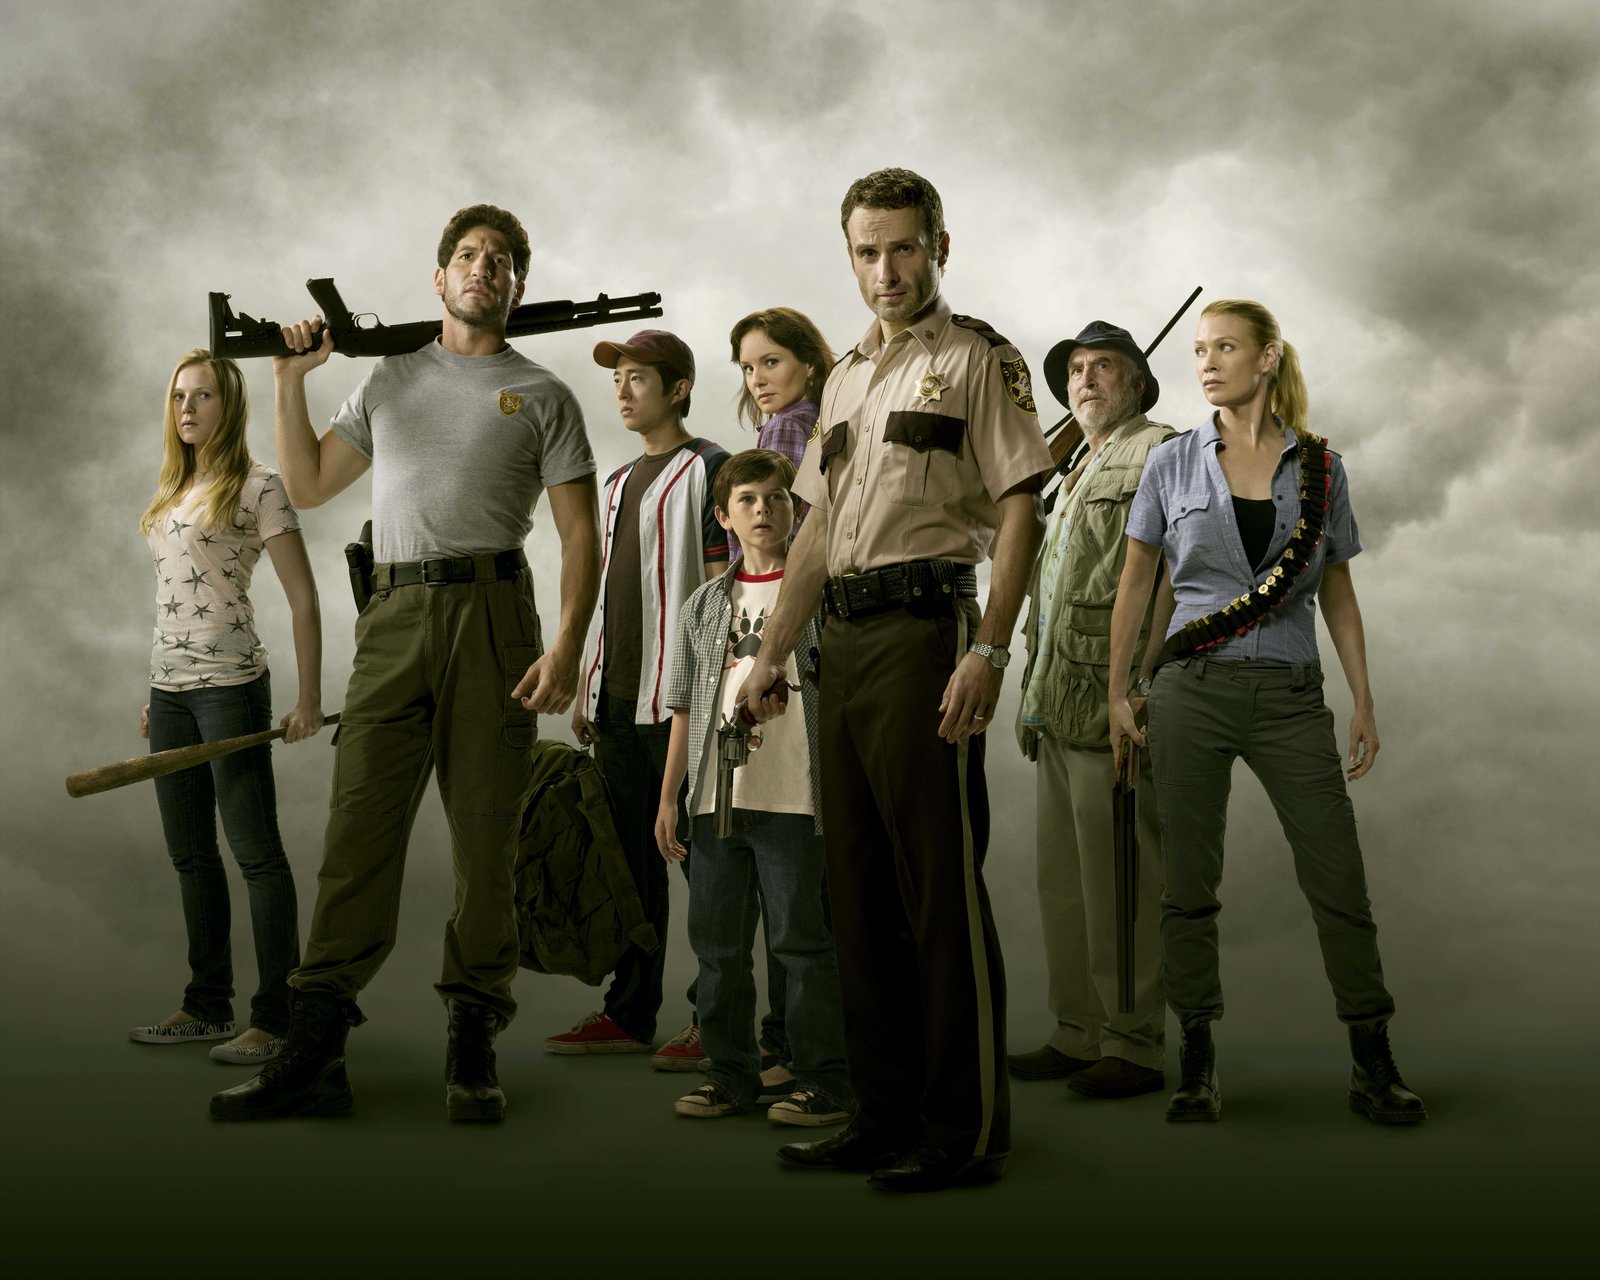 Walking Dead, The - Staffel 1 - Uncut (blu-ray)